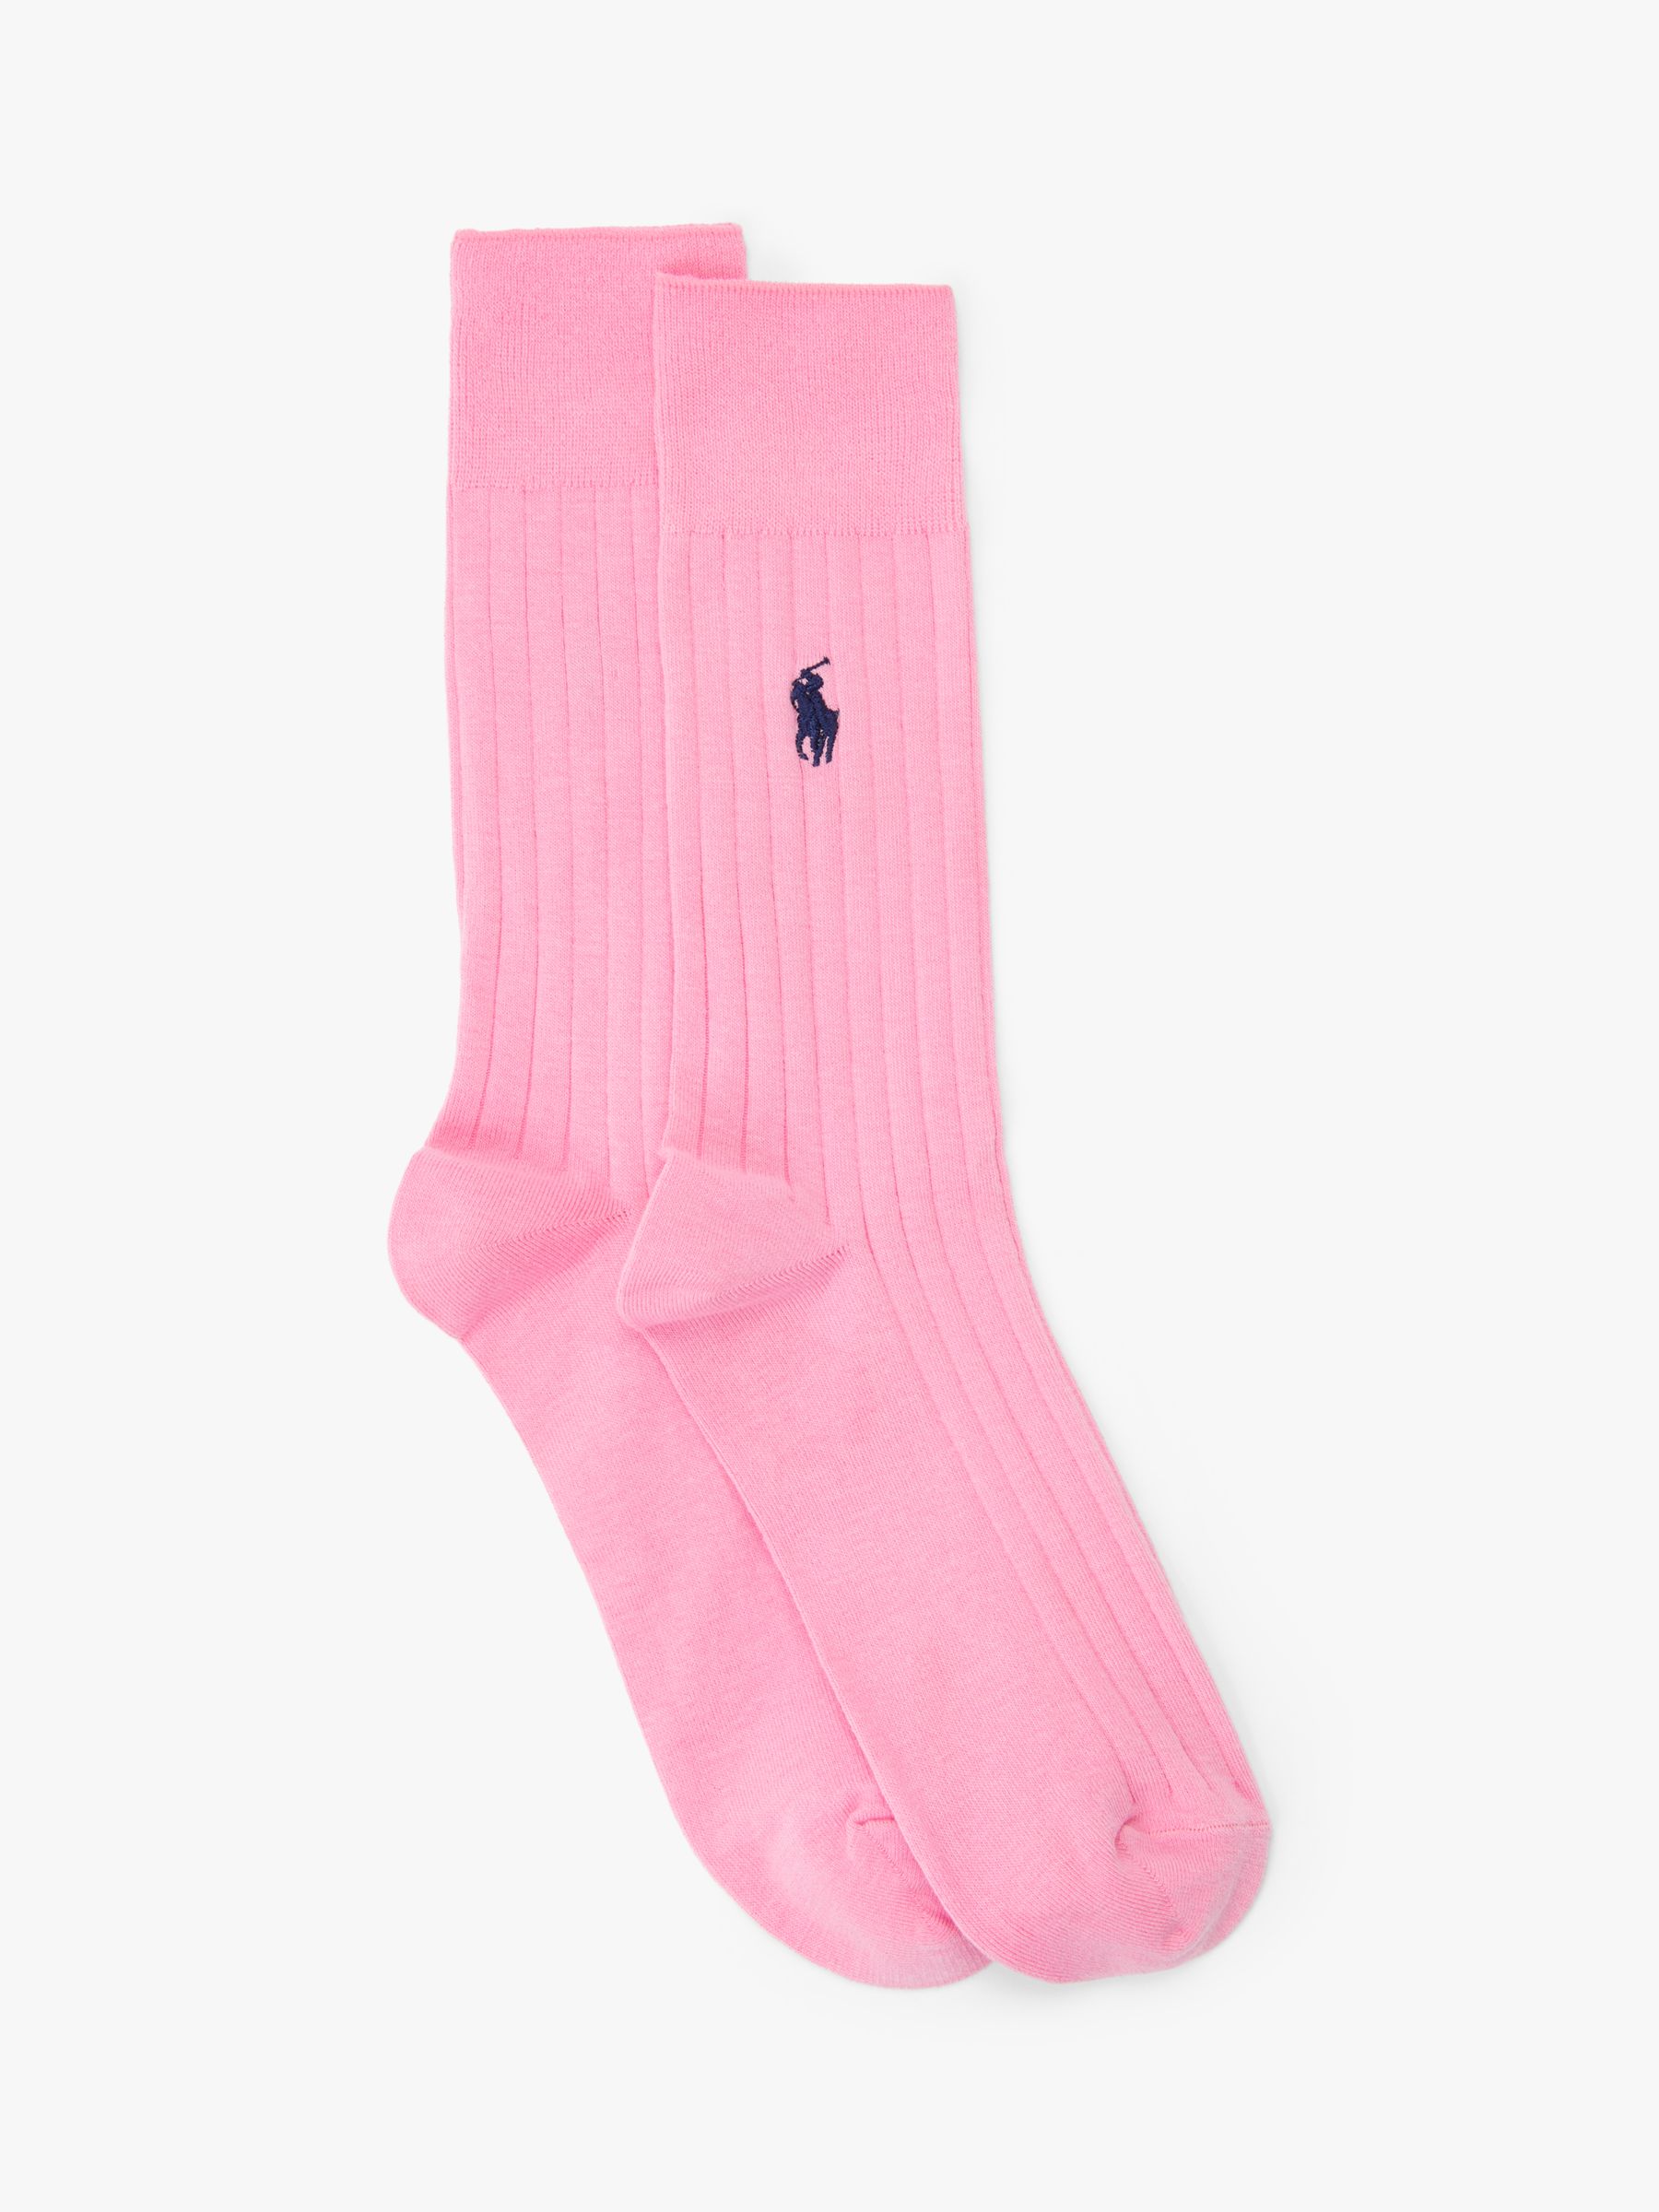 Total 111+ imagen pink ralph lauren socks